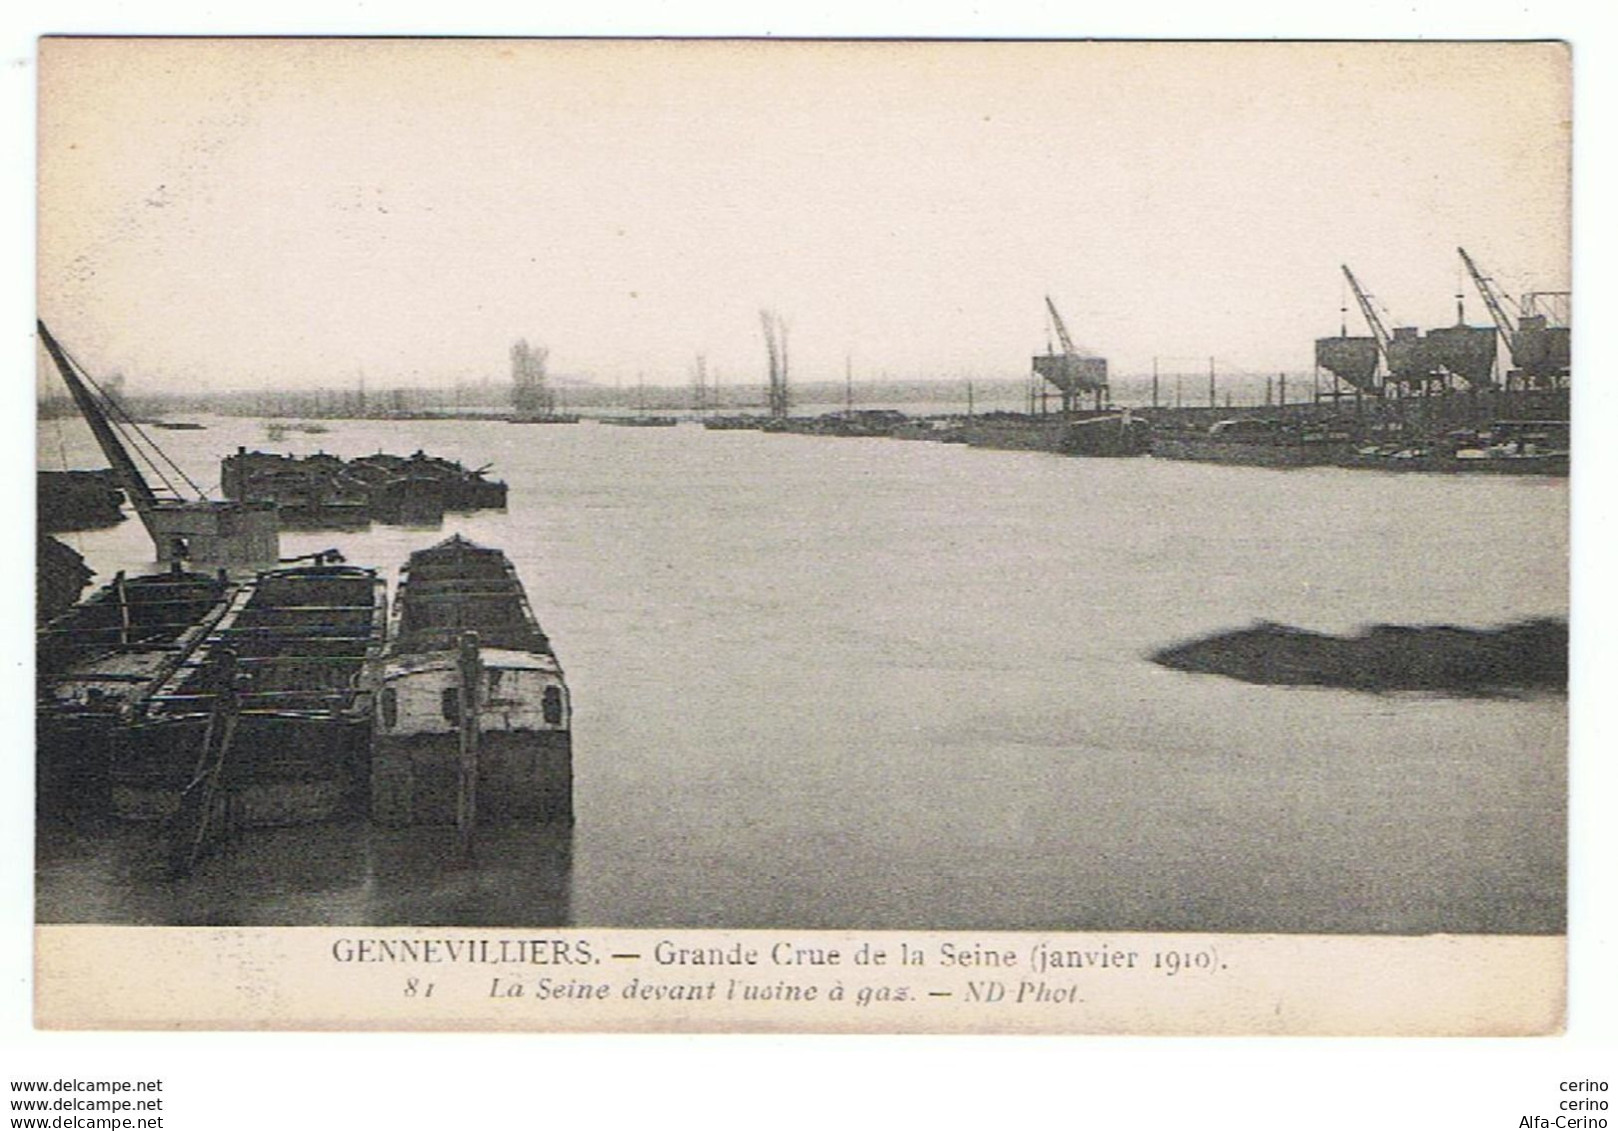 GENNEVILLIERS:  GRANDE  CRUE  DE  LA  SEINE (janvier 1910)  -  DEVANT  L' USINE  A  GAZ  -  PHOTO  -  FP - Floods